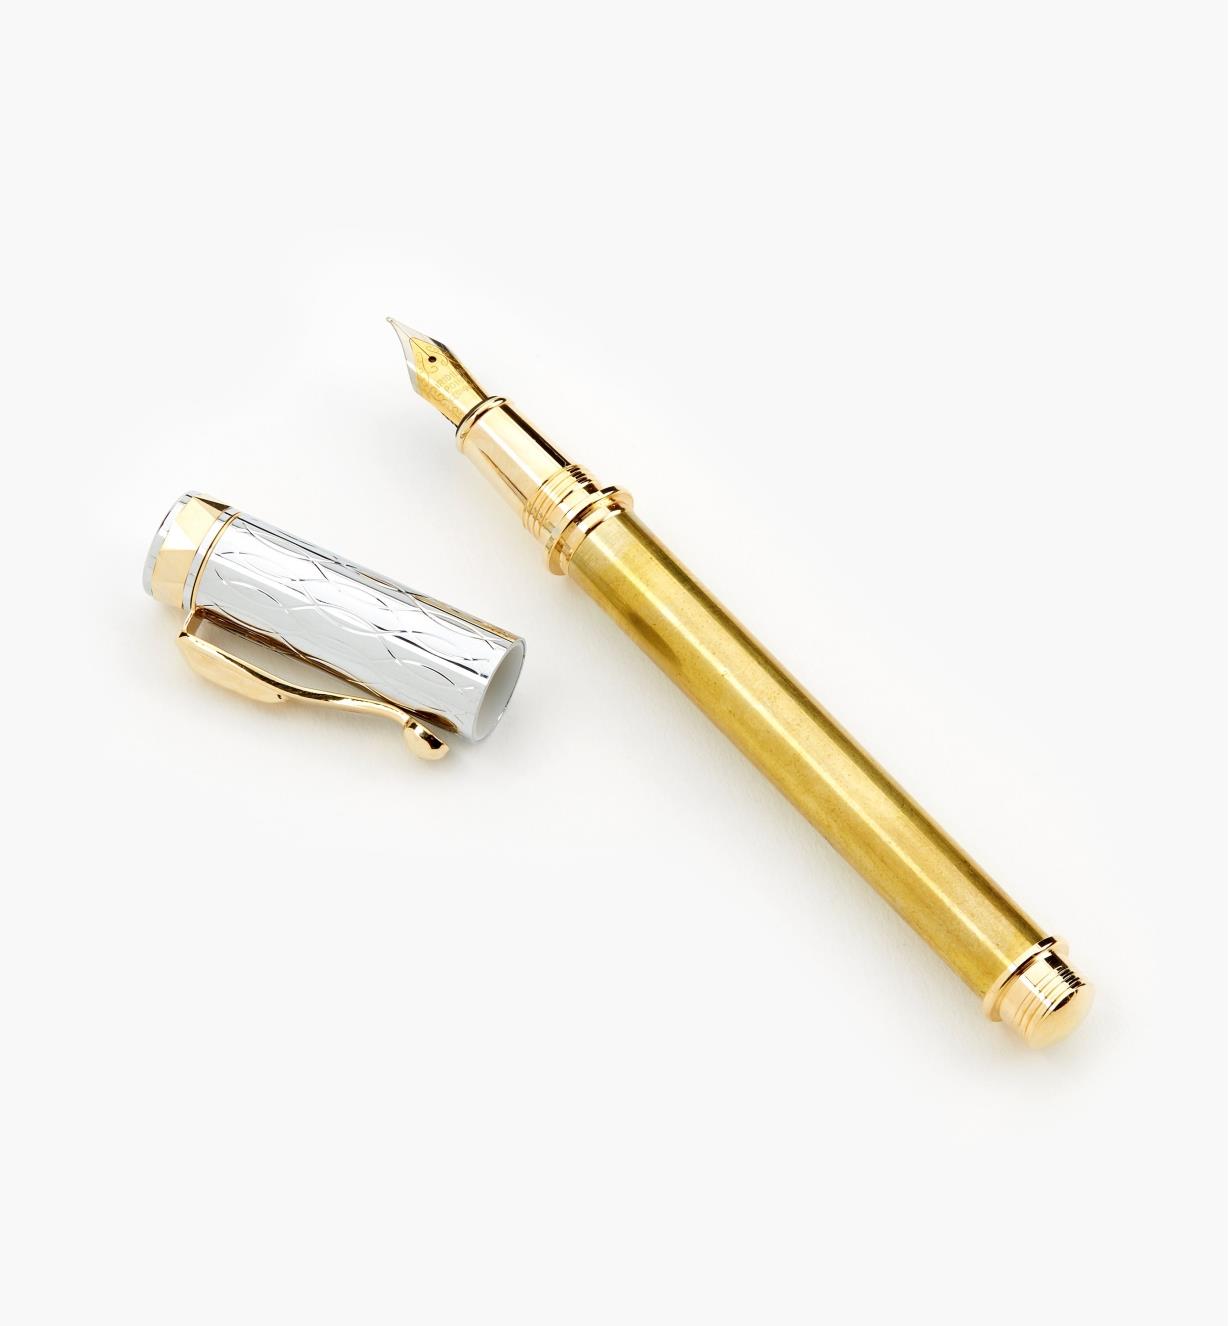 88K7616 - Electra Fountain Pen, Gold/Chrome